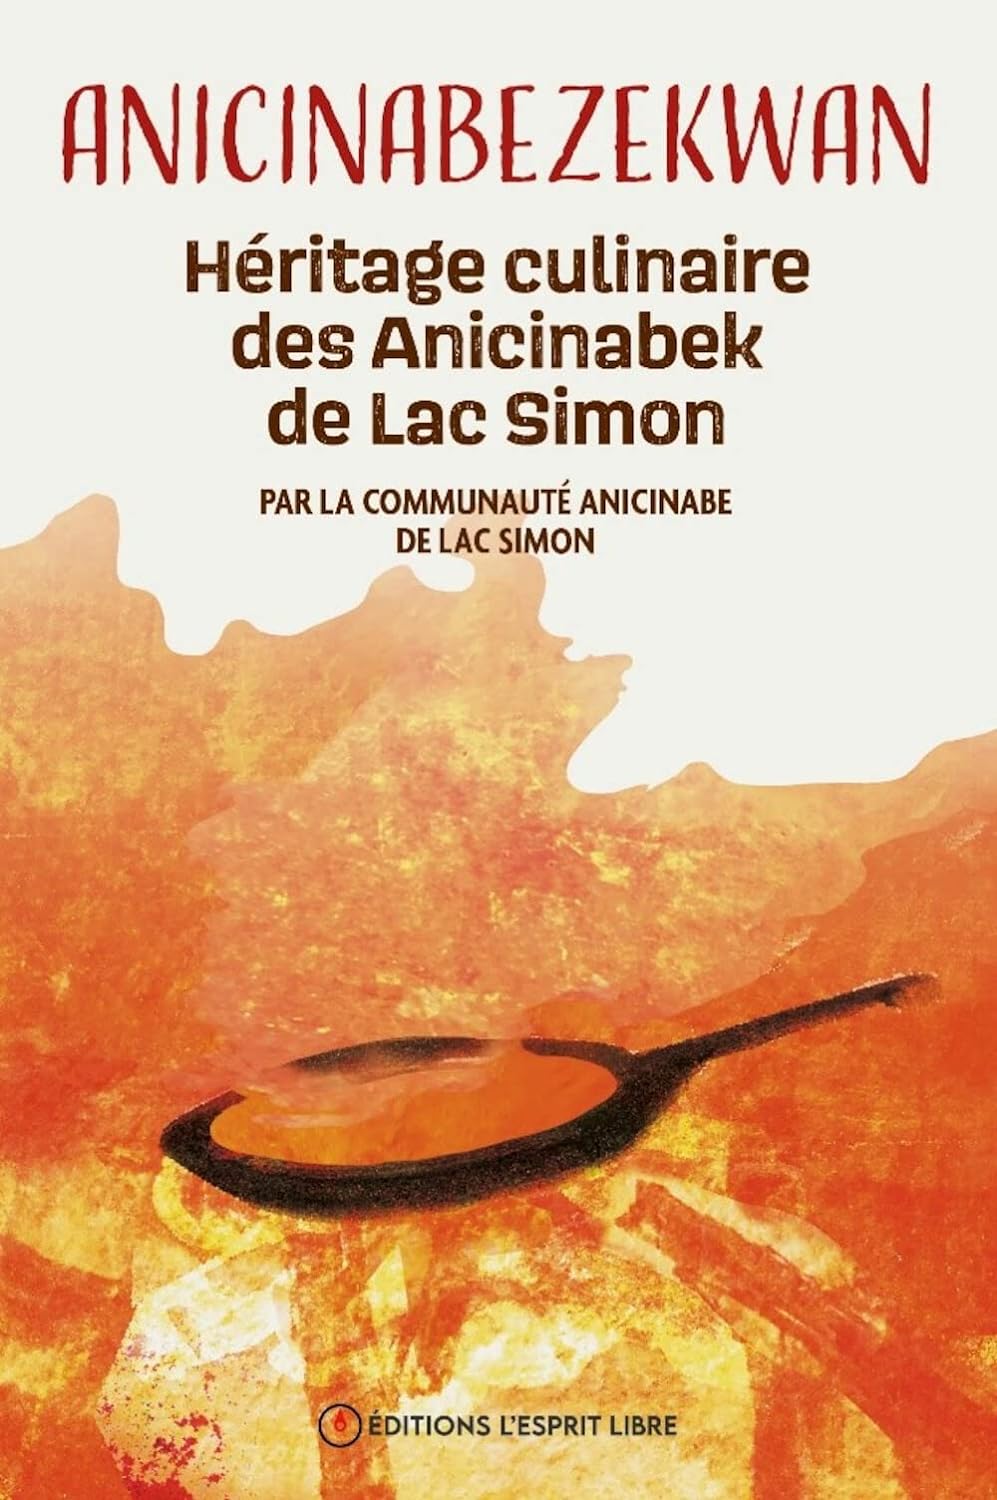 Anicinabezekwan : héritage culinaire des Anicinabek de Lac Simon    - Esprit libre (L') Ed. - Livre de cuisine - 